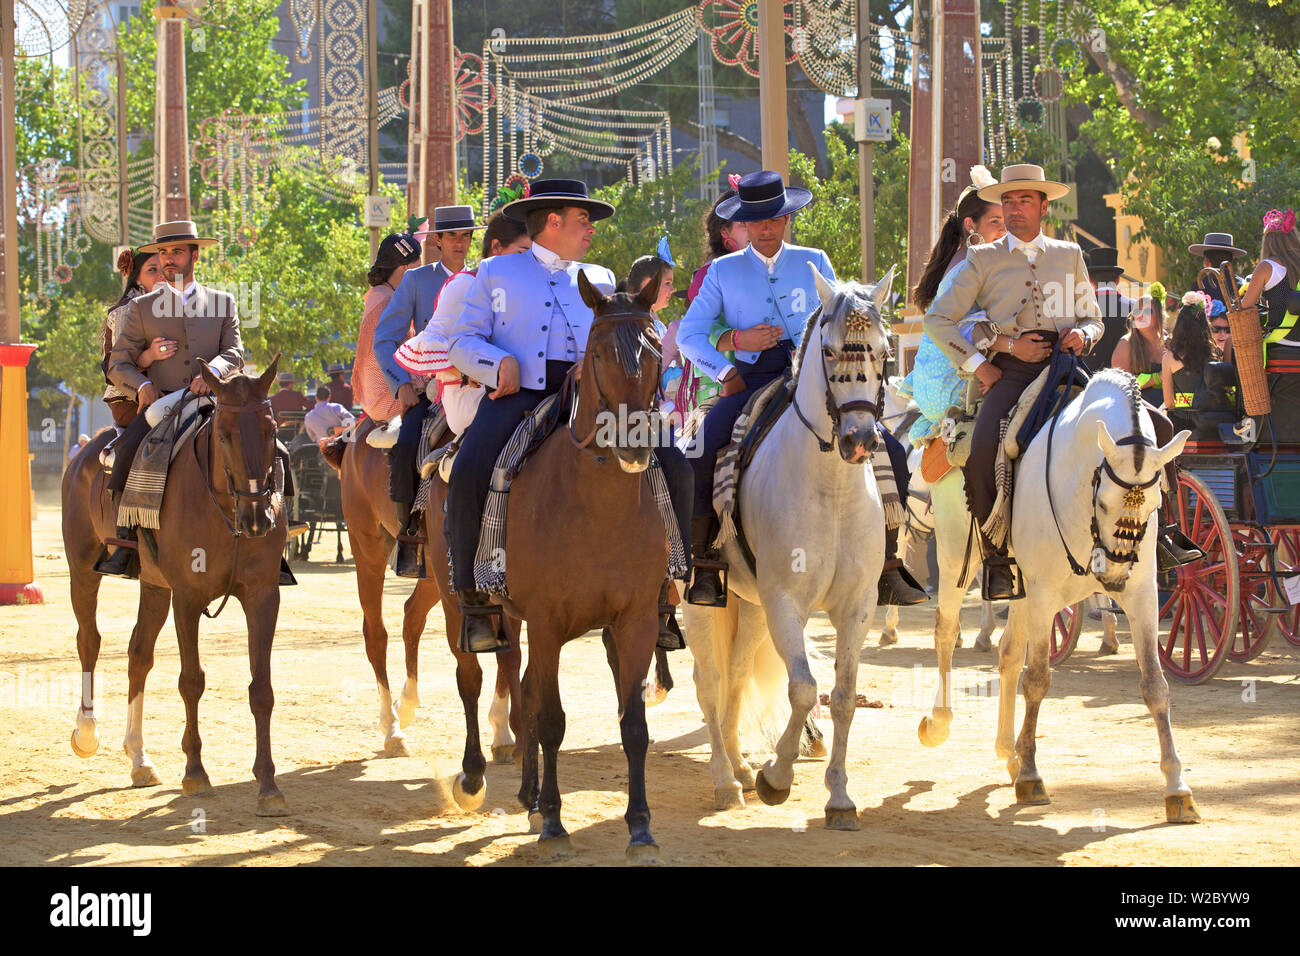 Horse Riders in Traditional Spanish Costume, Annual Horse Fair, Jerez de la Frontera, Cadiz Province, Andalusia, Spain Stock Photo